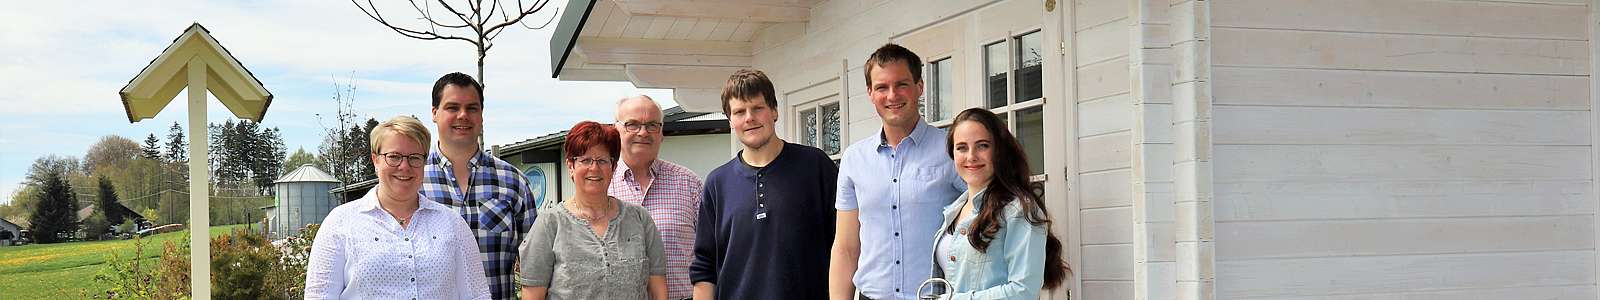 Familie | Maiers frische Milchprodukte, Oberwihl-Hotzenwald